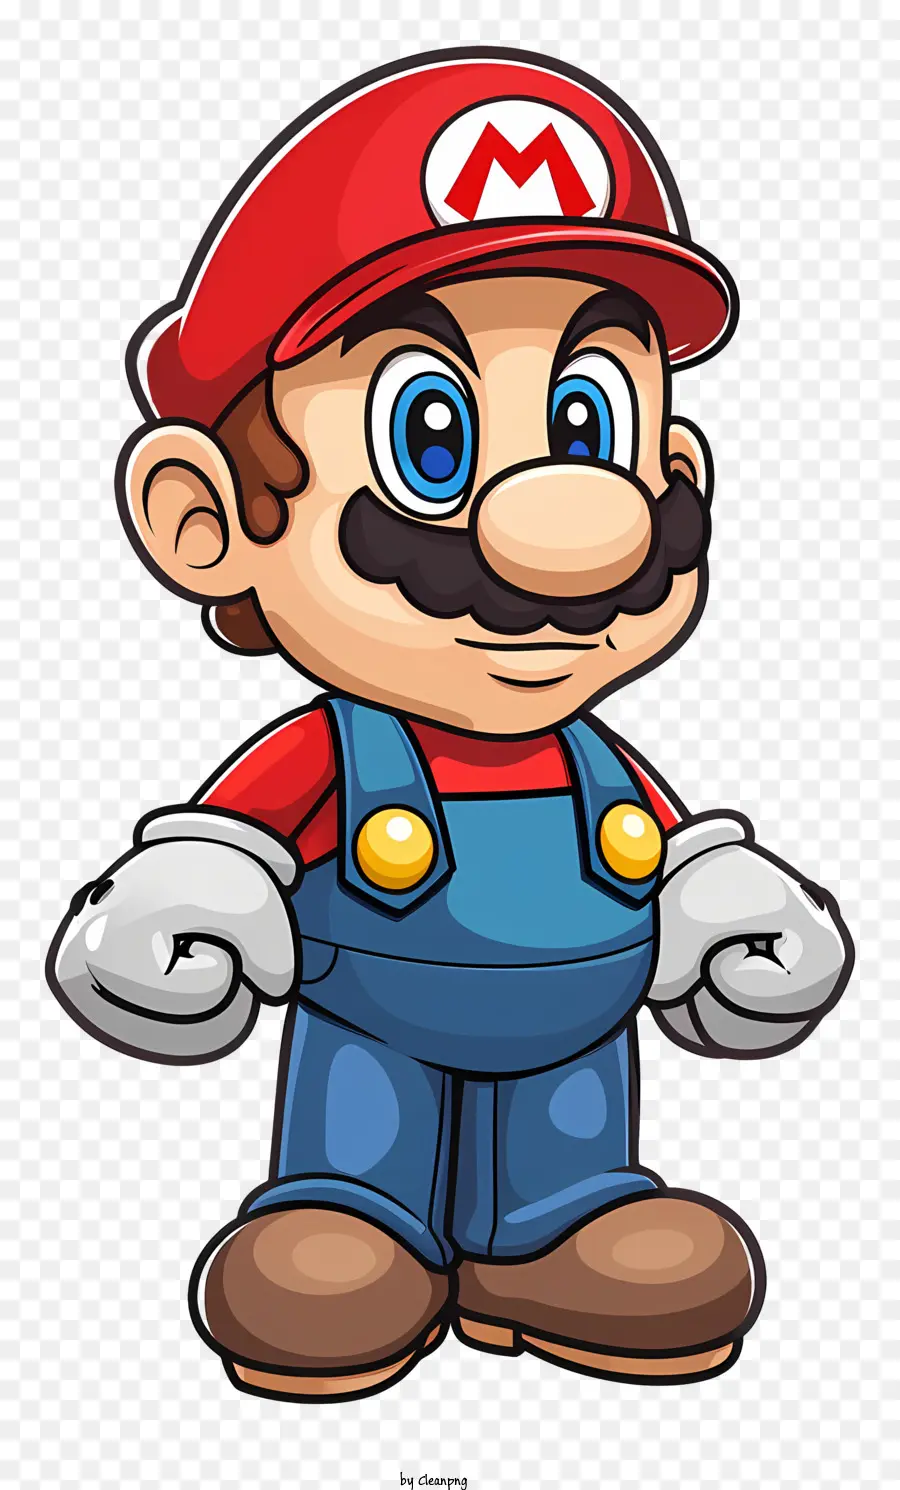 Mario - Người đàn ông hạnh phúc với đôi mắt xanh đội mũ đỏ